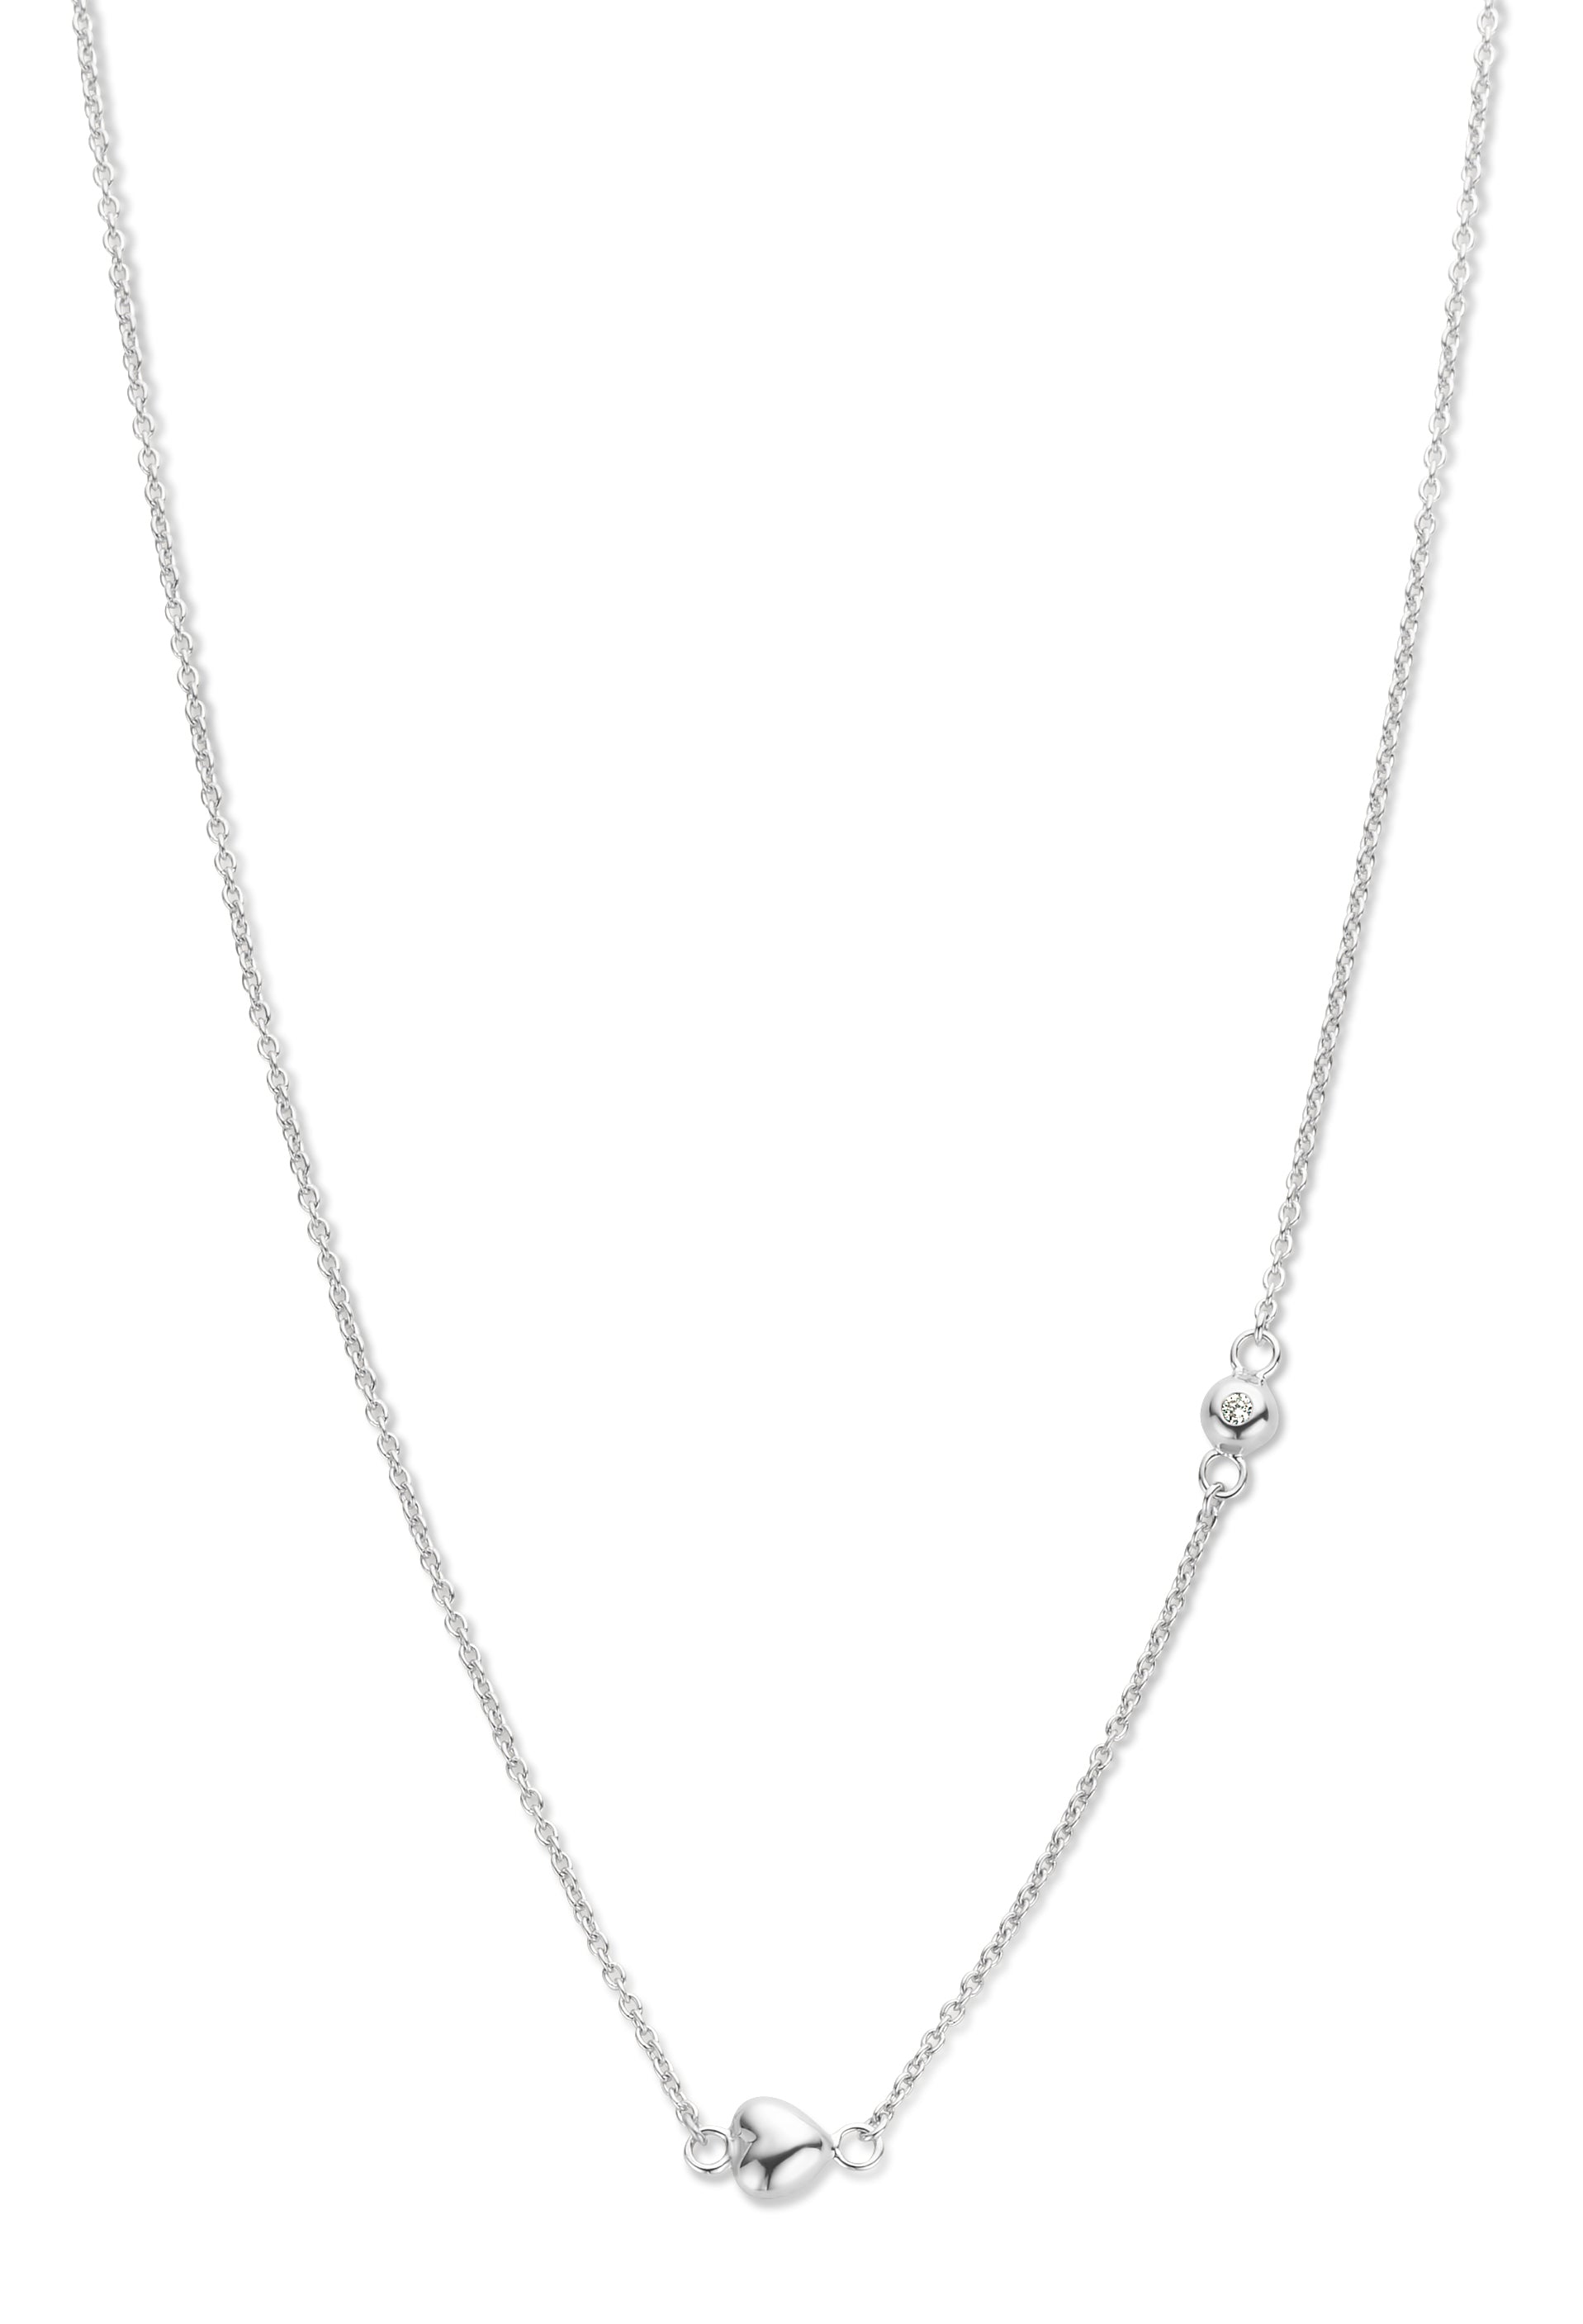 Miracle halskæde 45 cm - 14 kt. hvidguld med 0,02 CT brilliantslebne diamanter-1